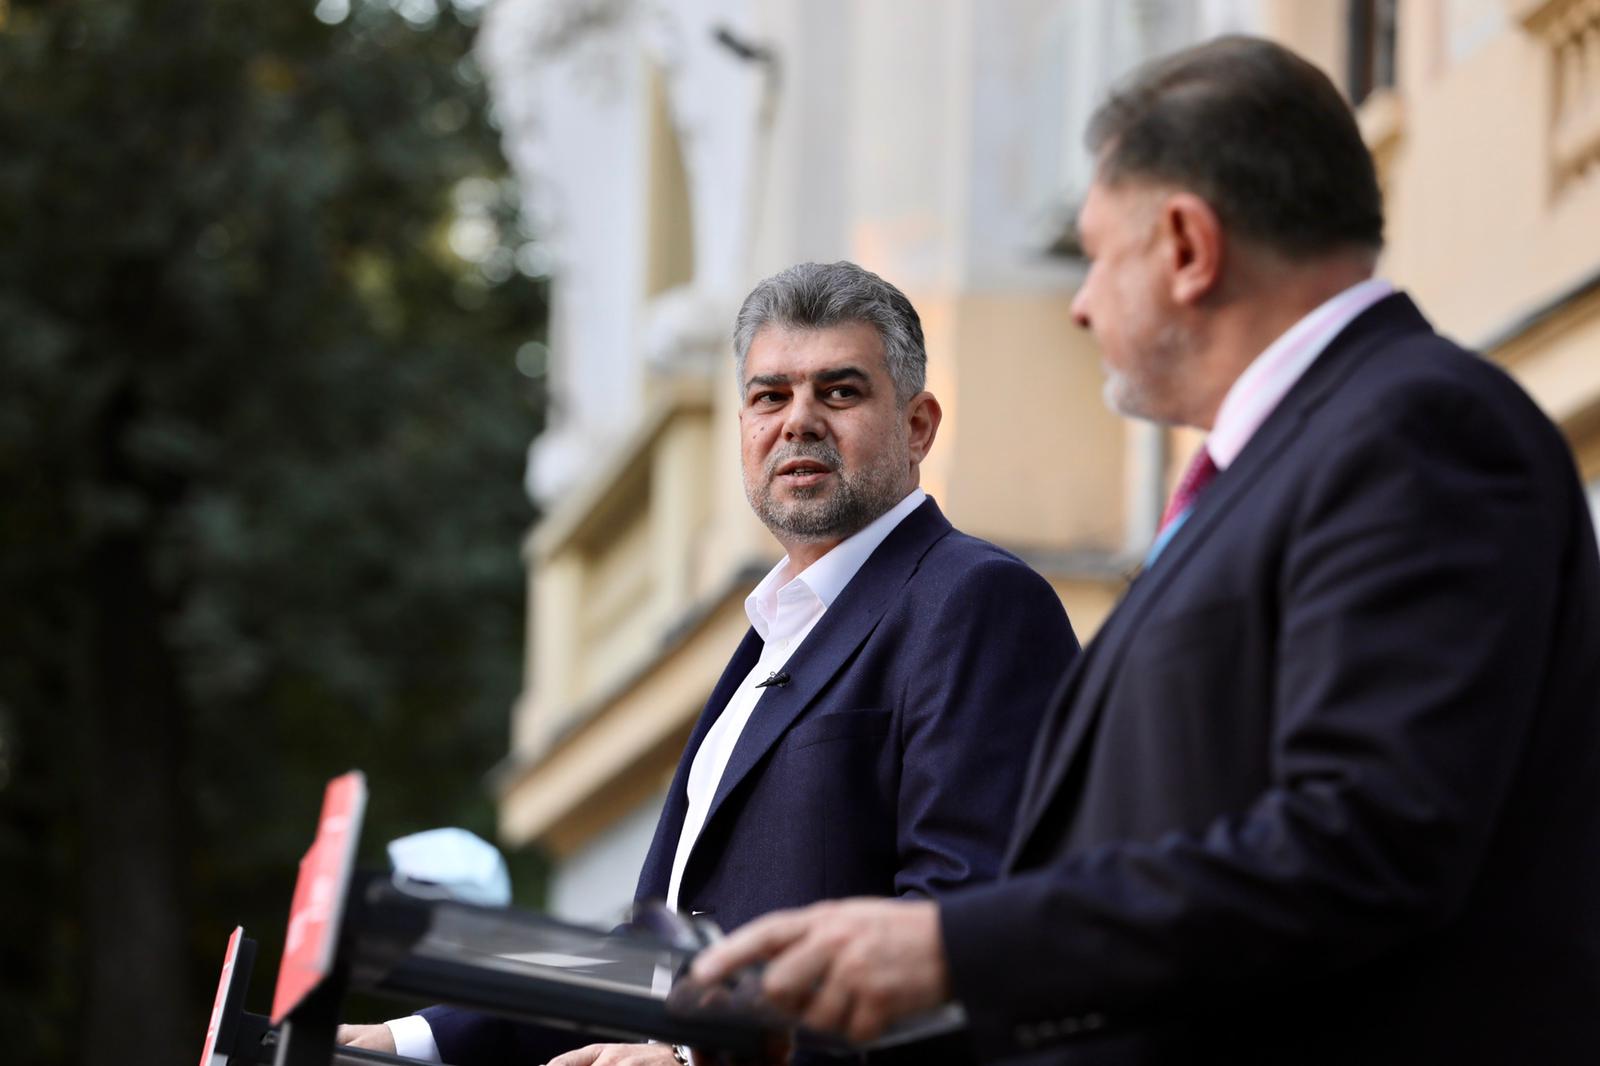 Marcel Ciolacu: „Eugen Nicolicea nu mai are susţinere pentru un nou mandat de parlamentar”. Ce spune despre Viorica Dăncilă